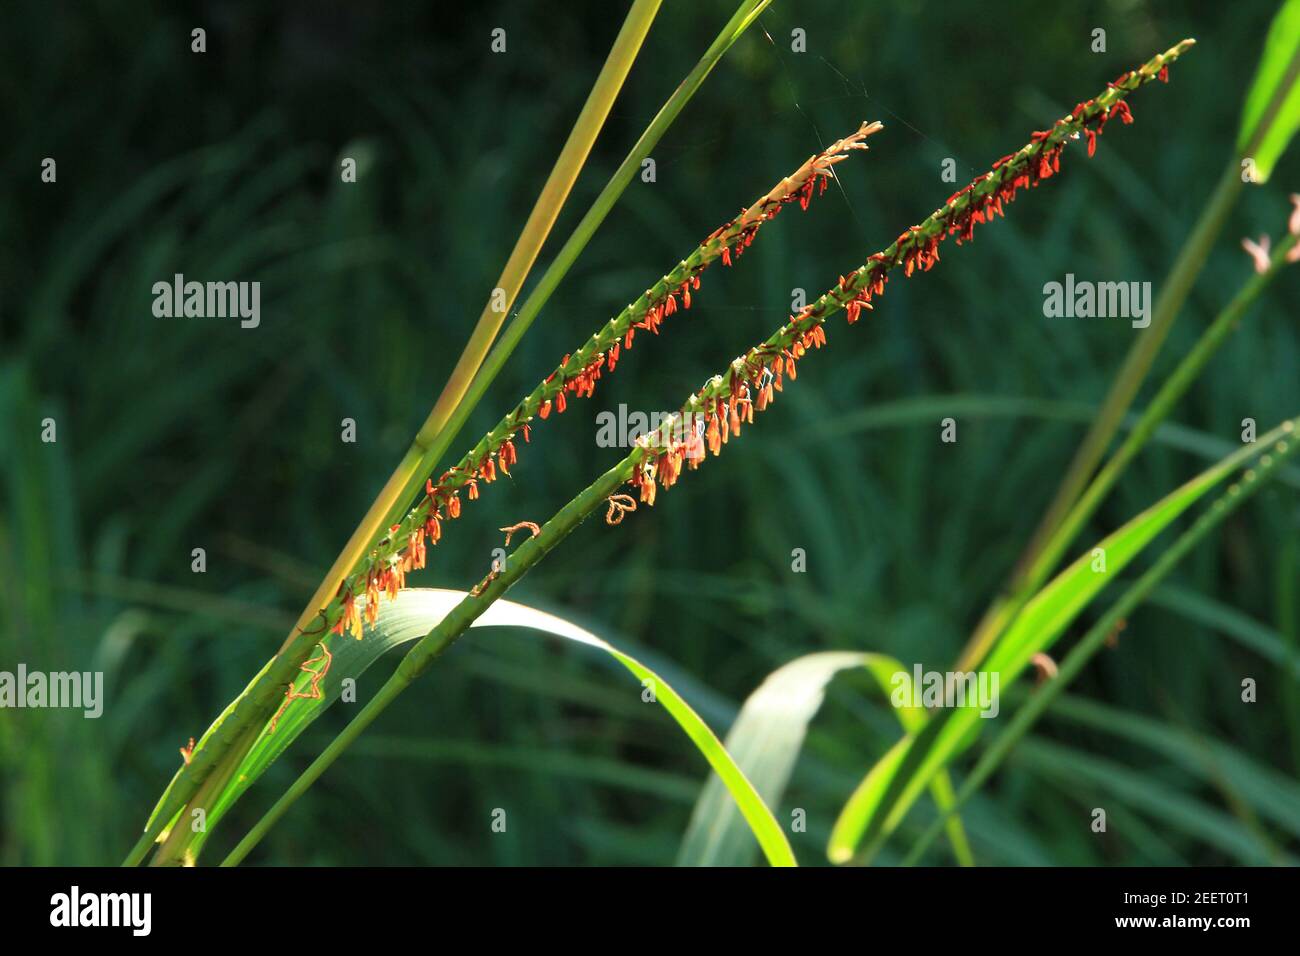 Flowering grasses Stock Photo